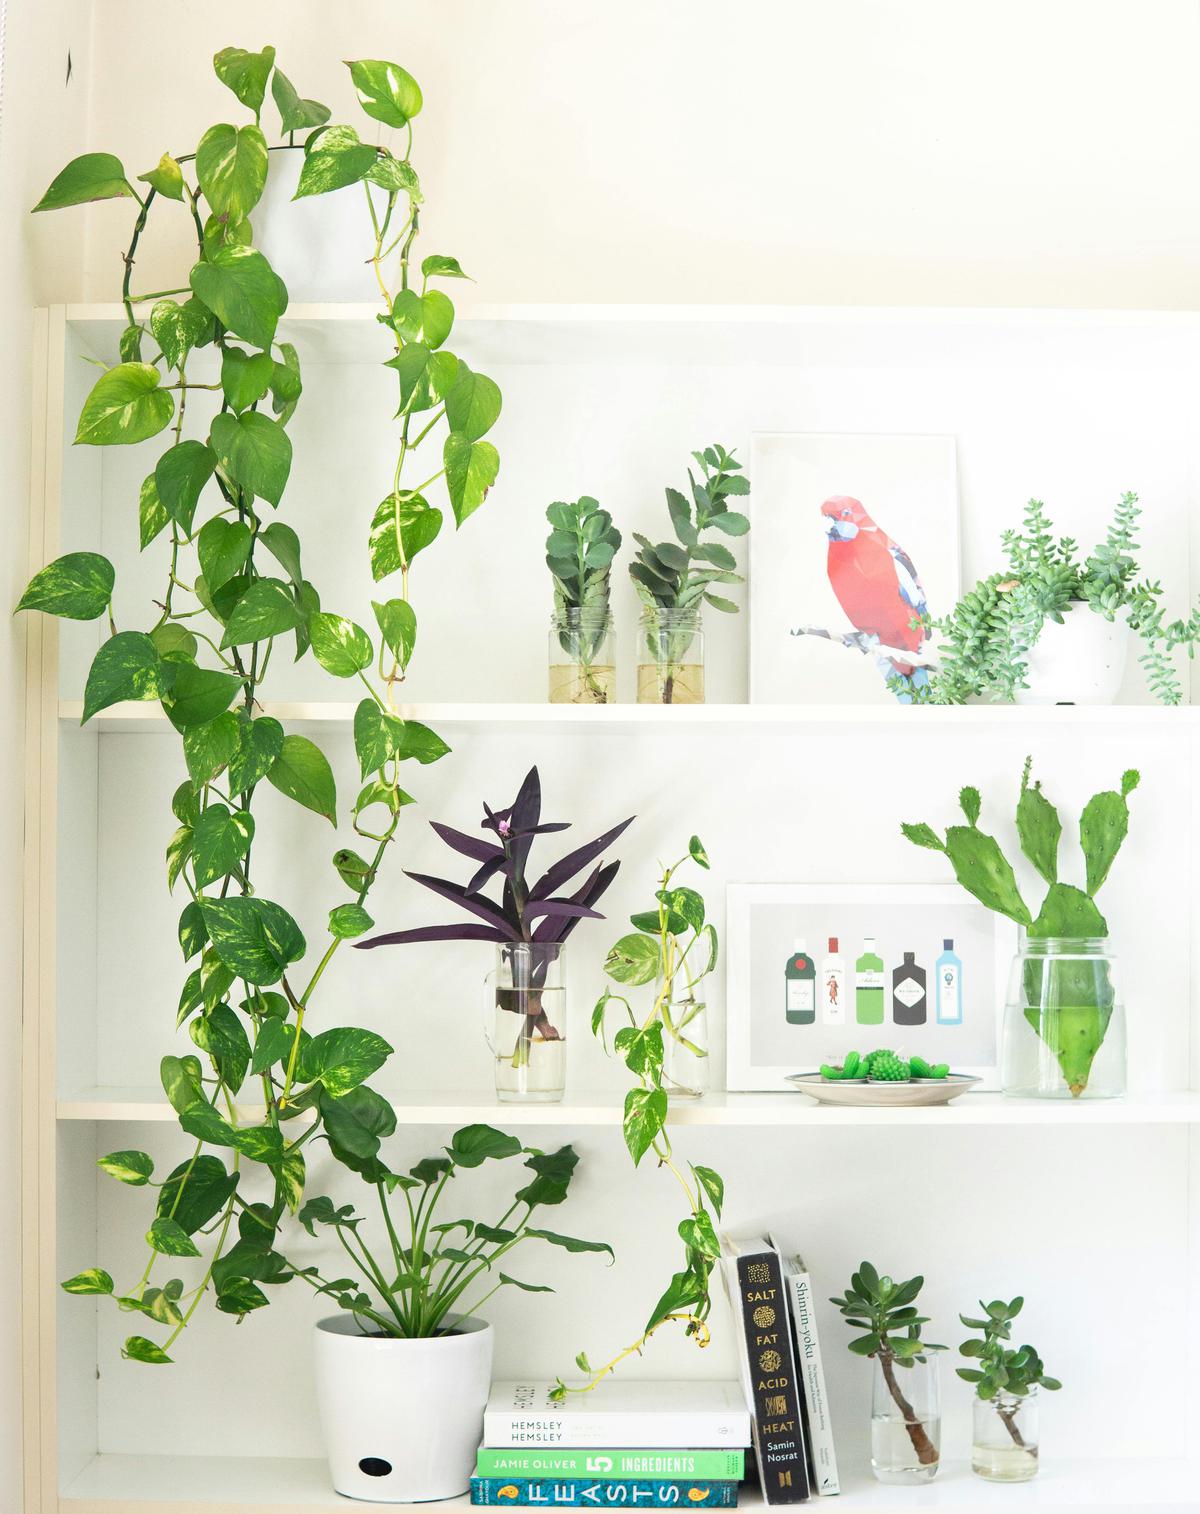 Plantas para interiores | Las mejores opciones para decorar tu casa
(Fuente: Pexels)